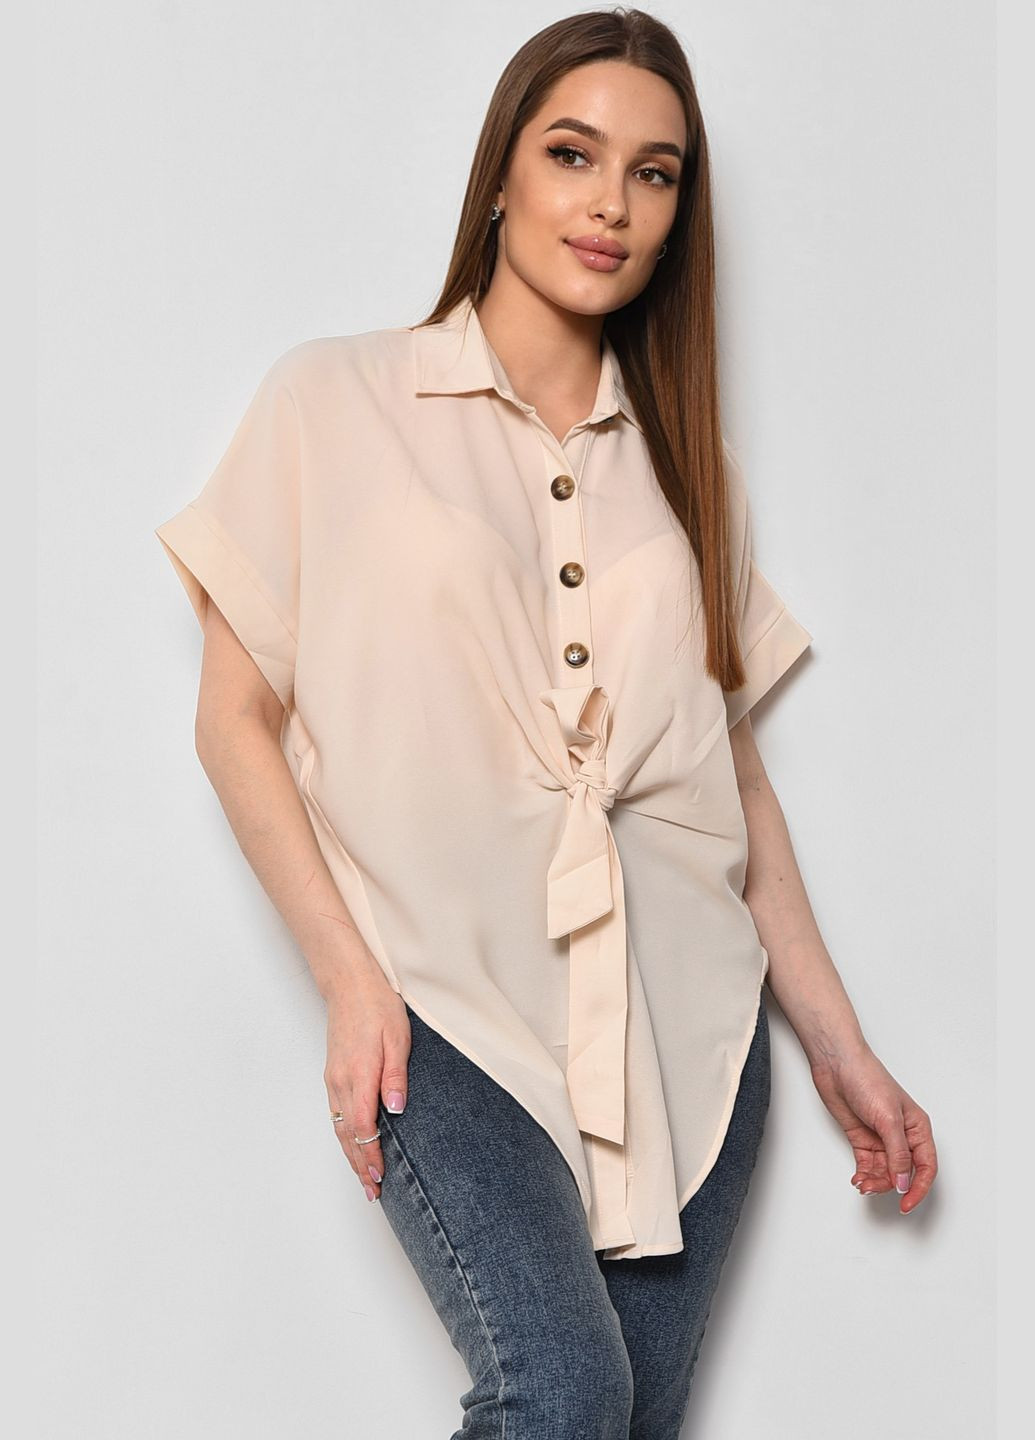 Светло-бежевая блуза женская с коротким рукавом светло-бежевого цвета с баской Let's Shop